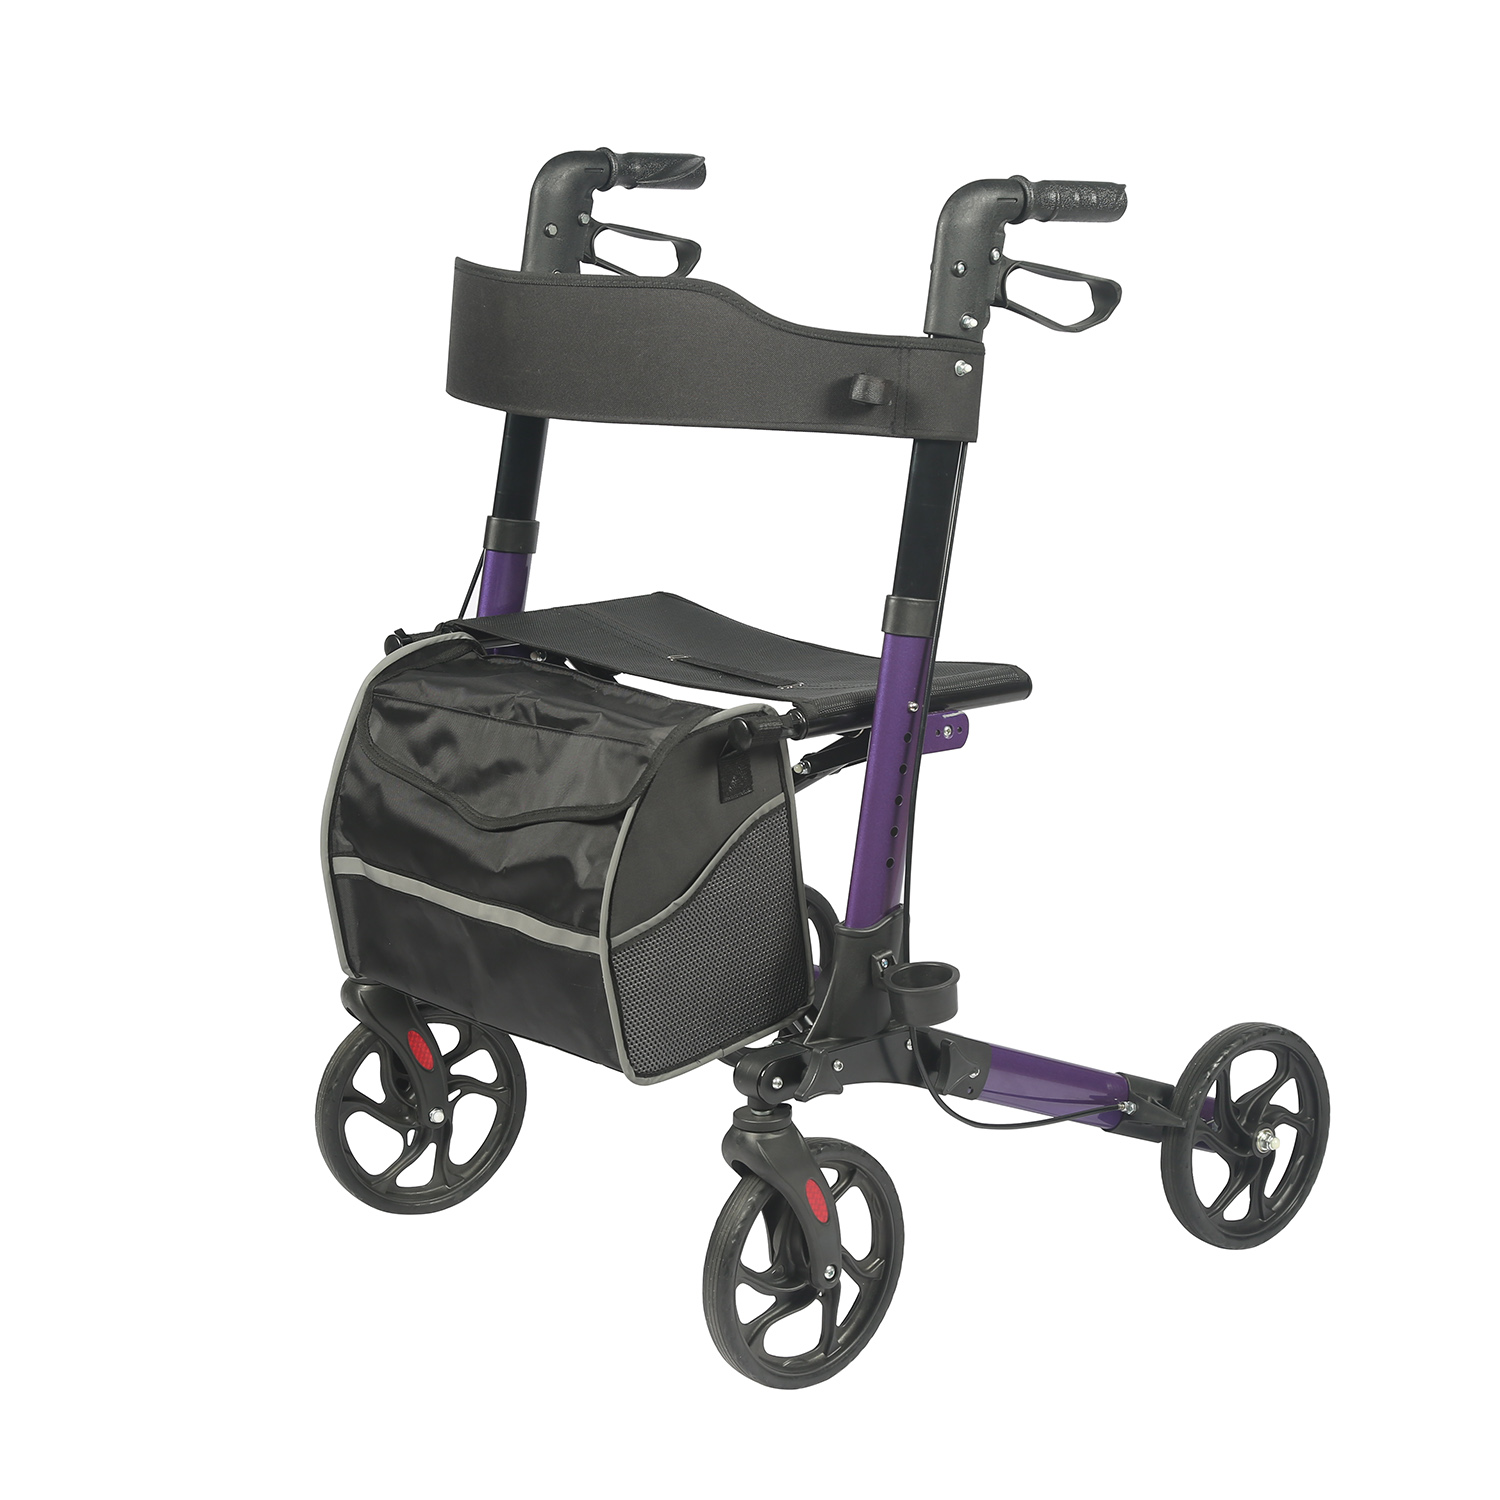 Revalidatietherapie Leveringen Vouwen Voltooid Mobility Rollator Walker Handicap